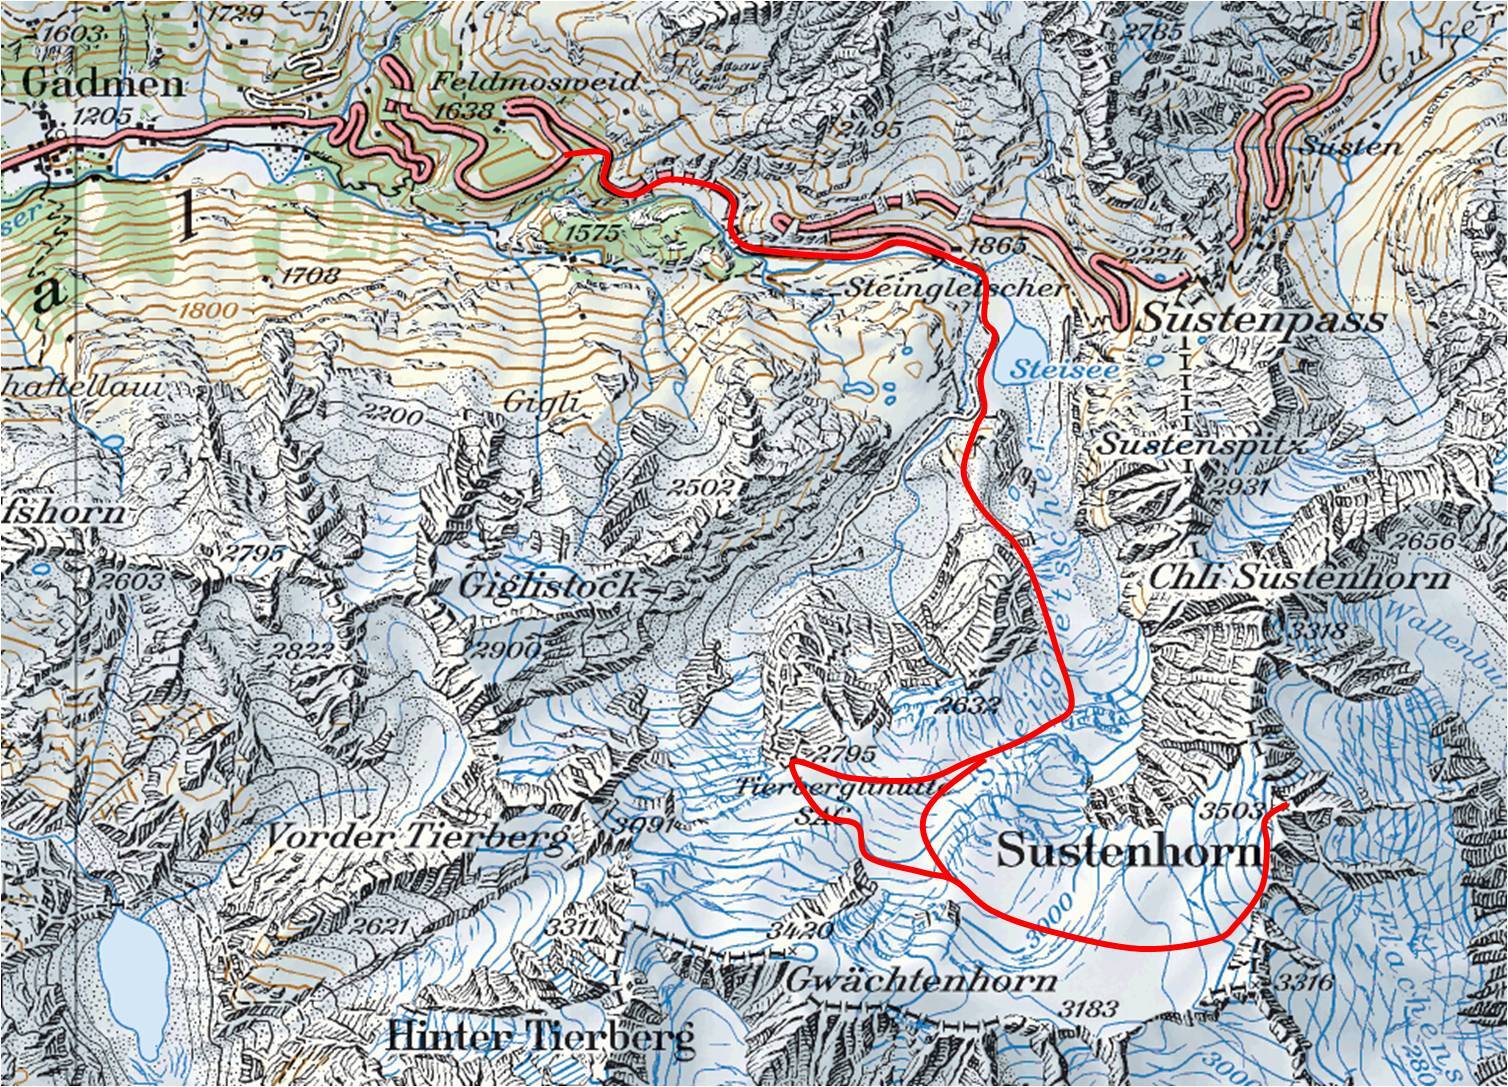 Sustenhorn ski tour topo